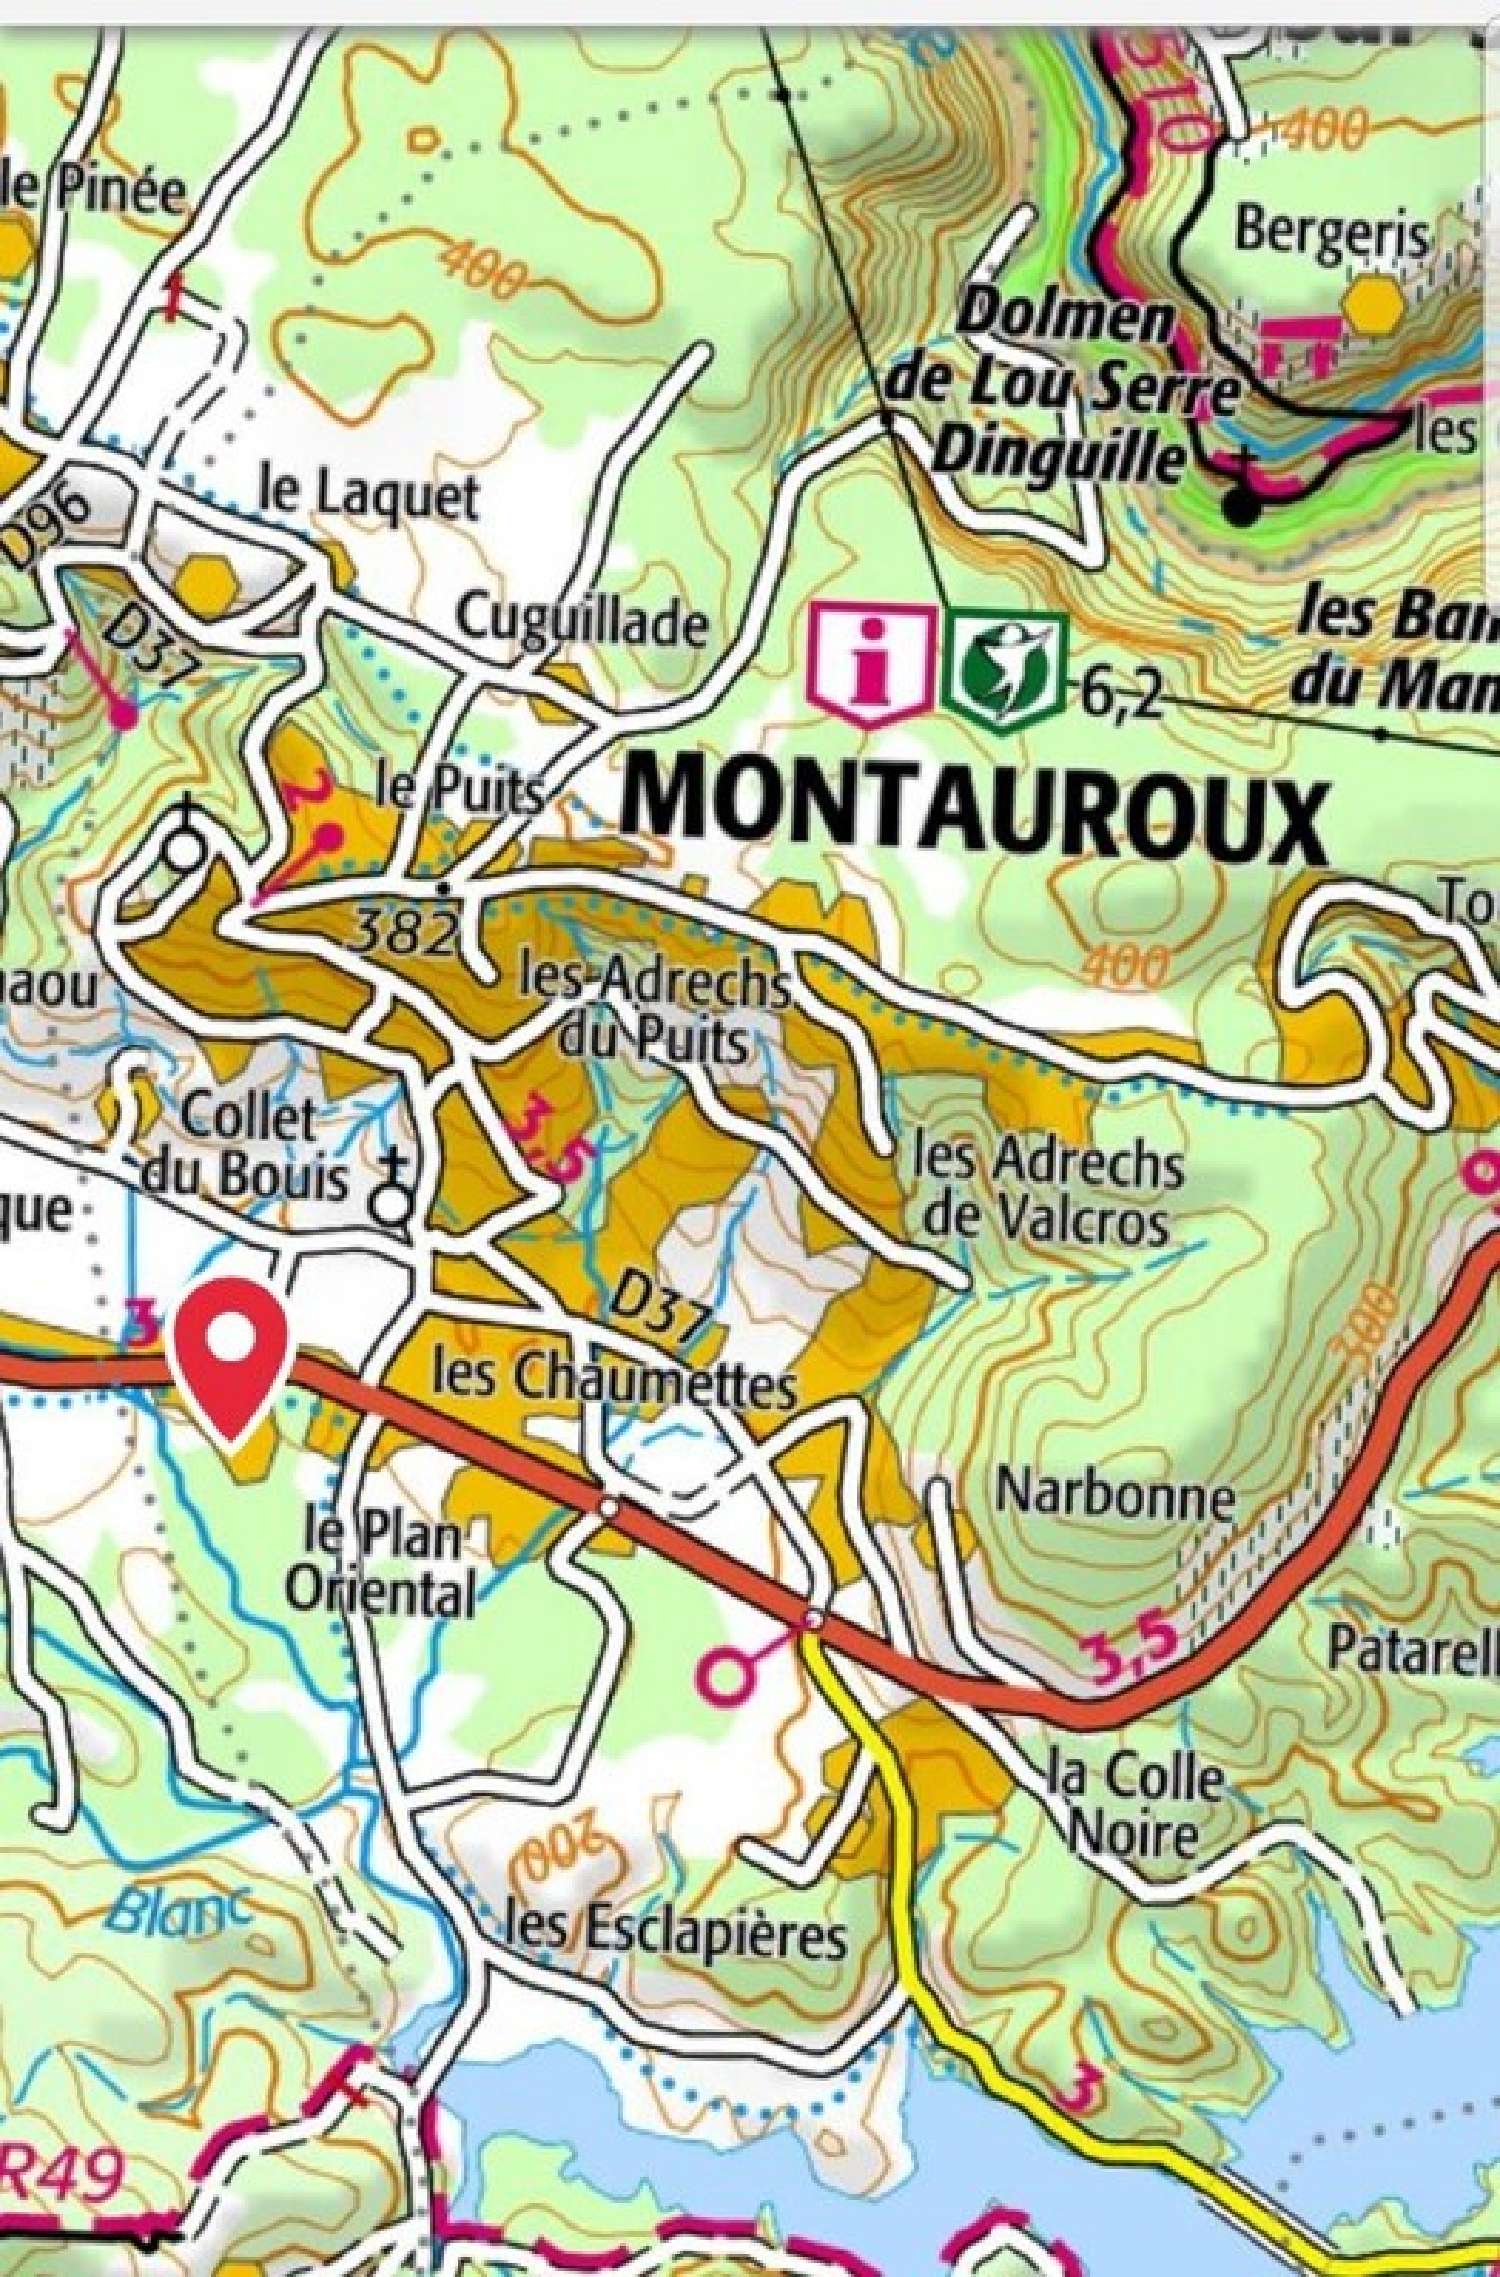  te koop terrein Montauroux Var 5